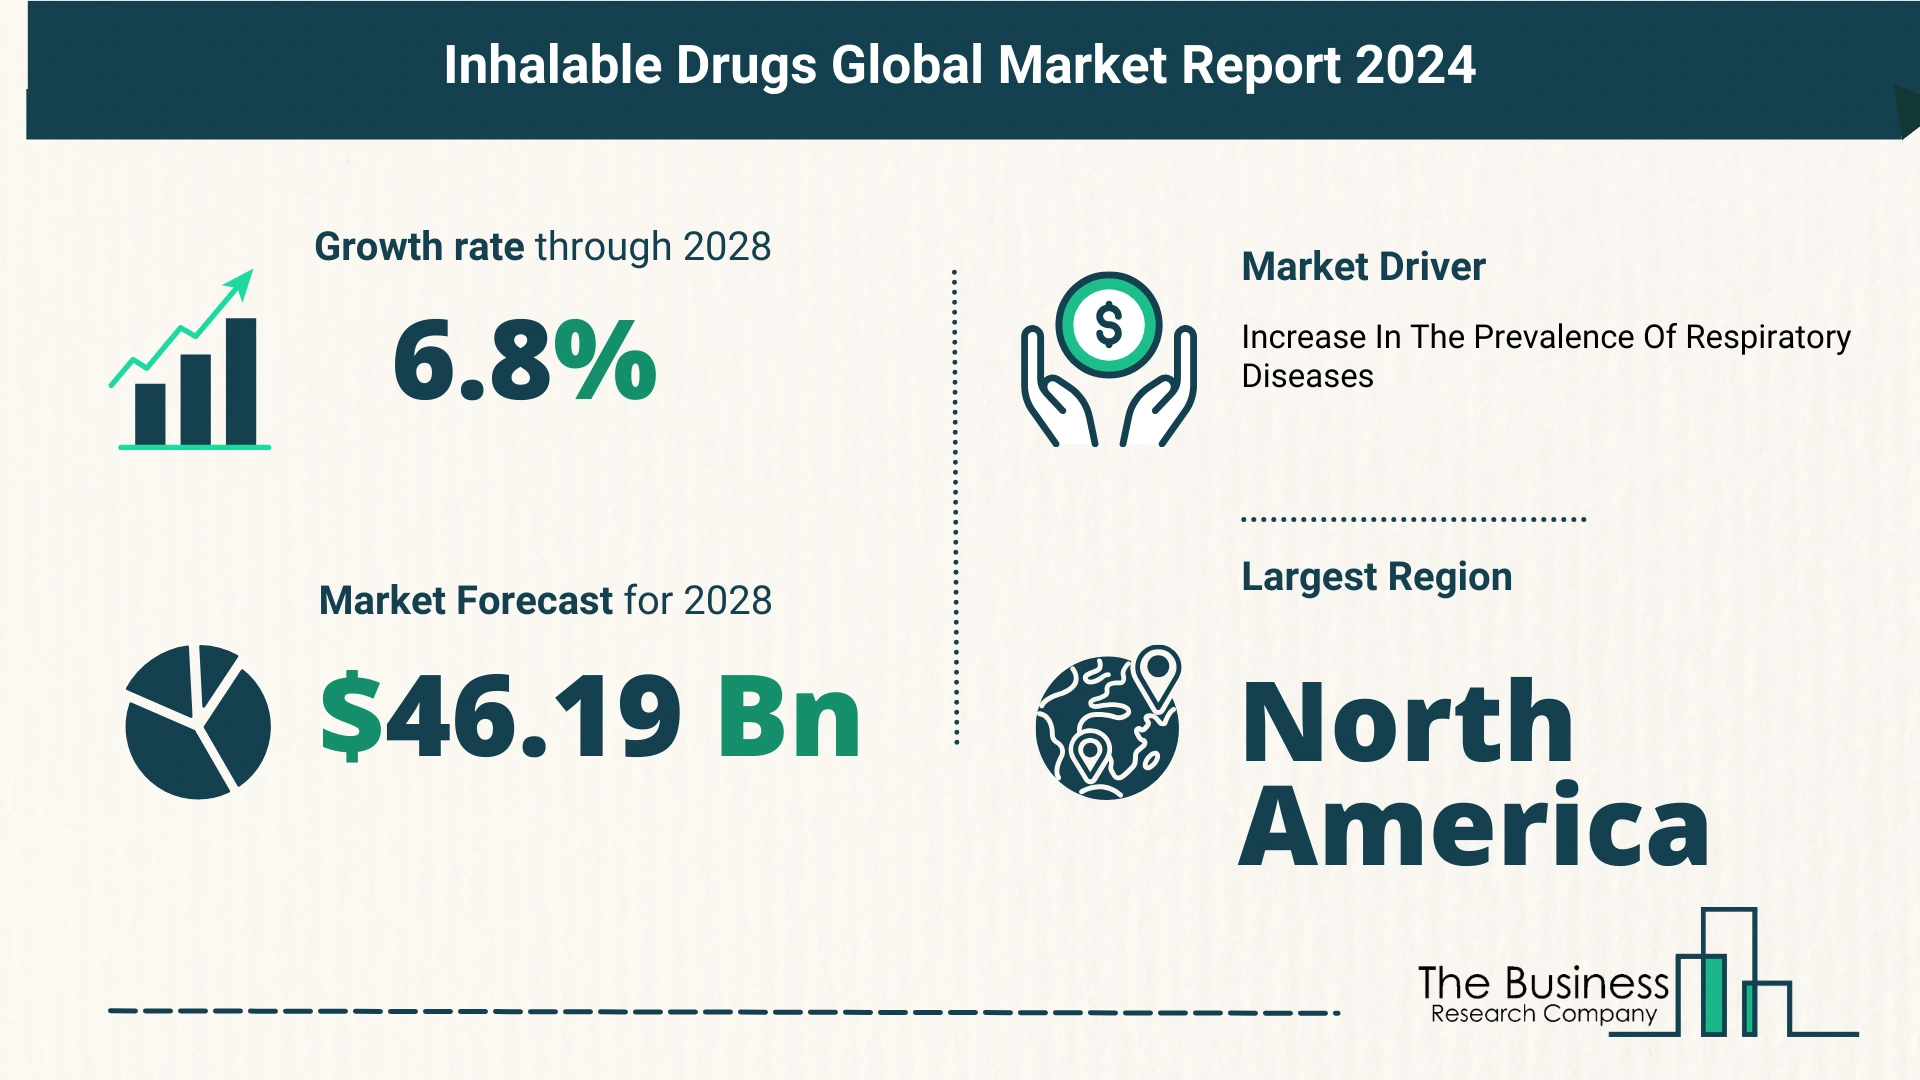 Global Inhalable Drugs Market